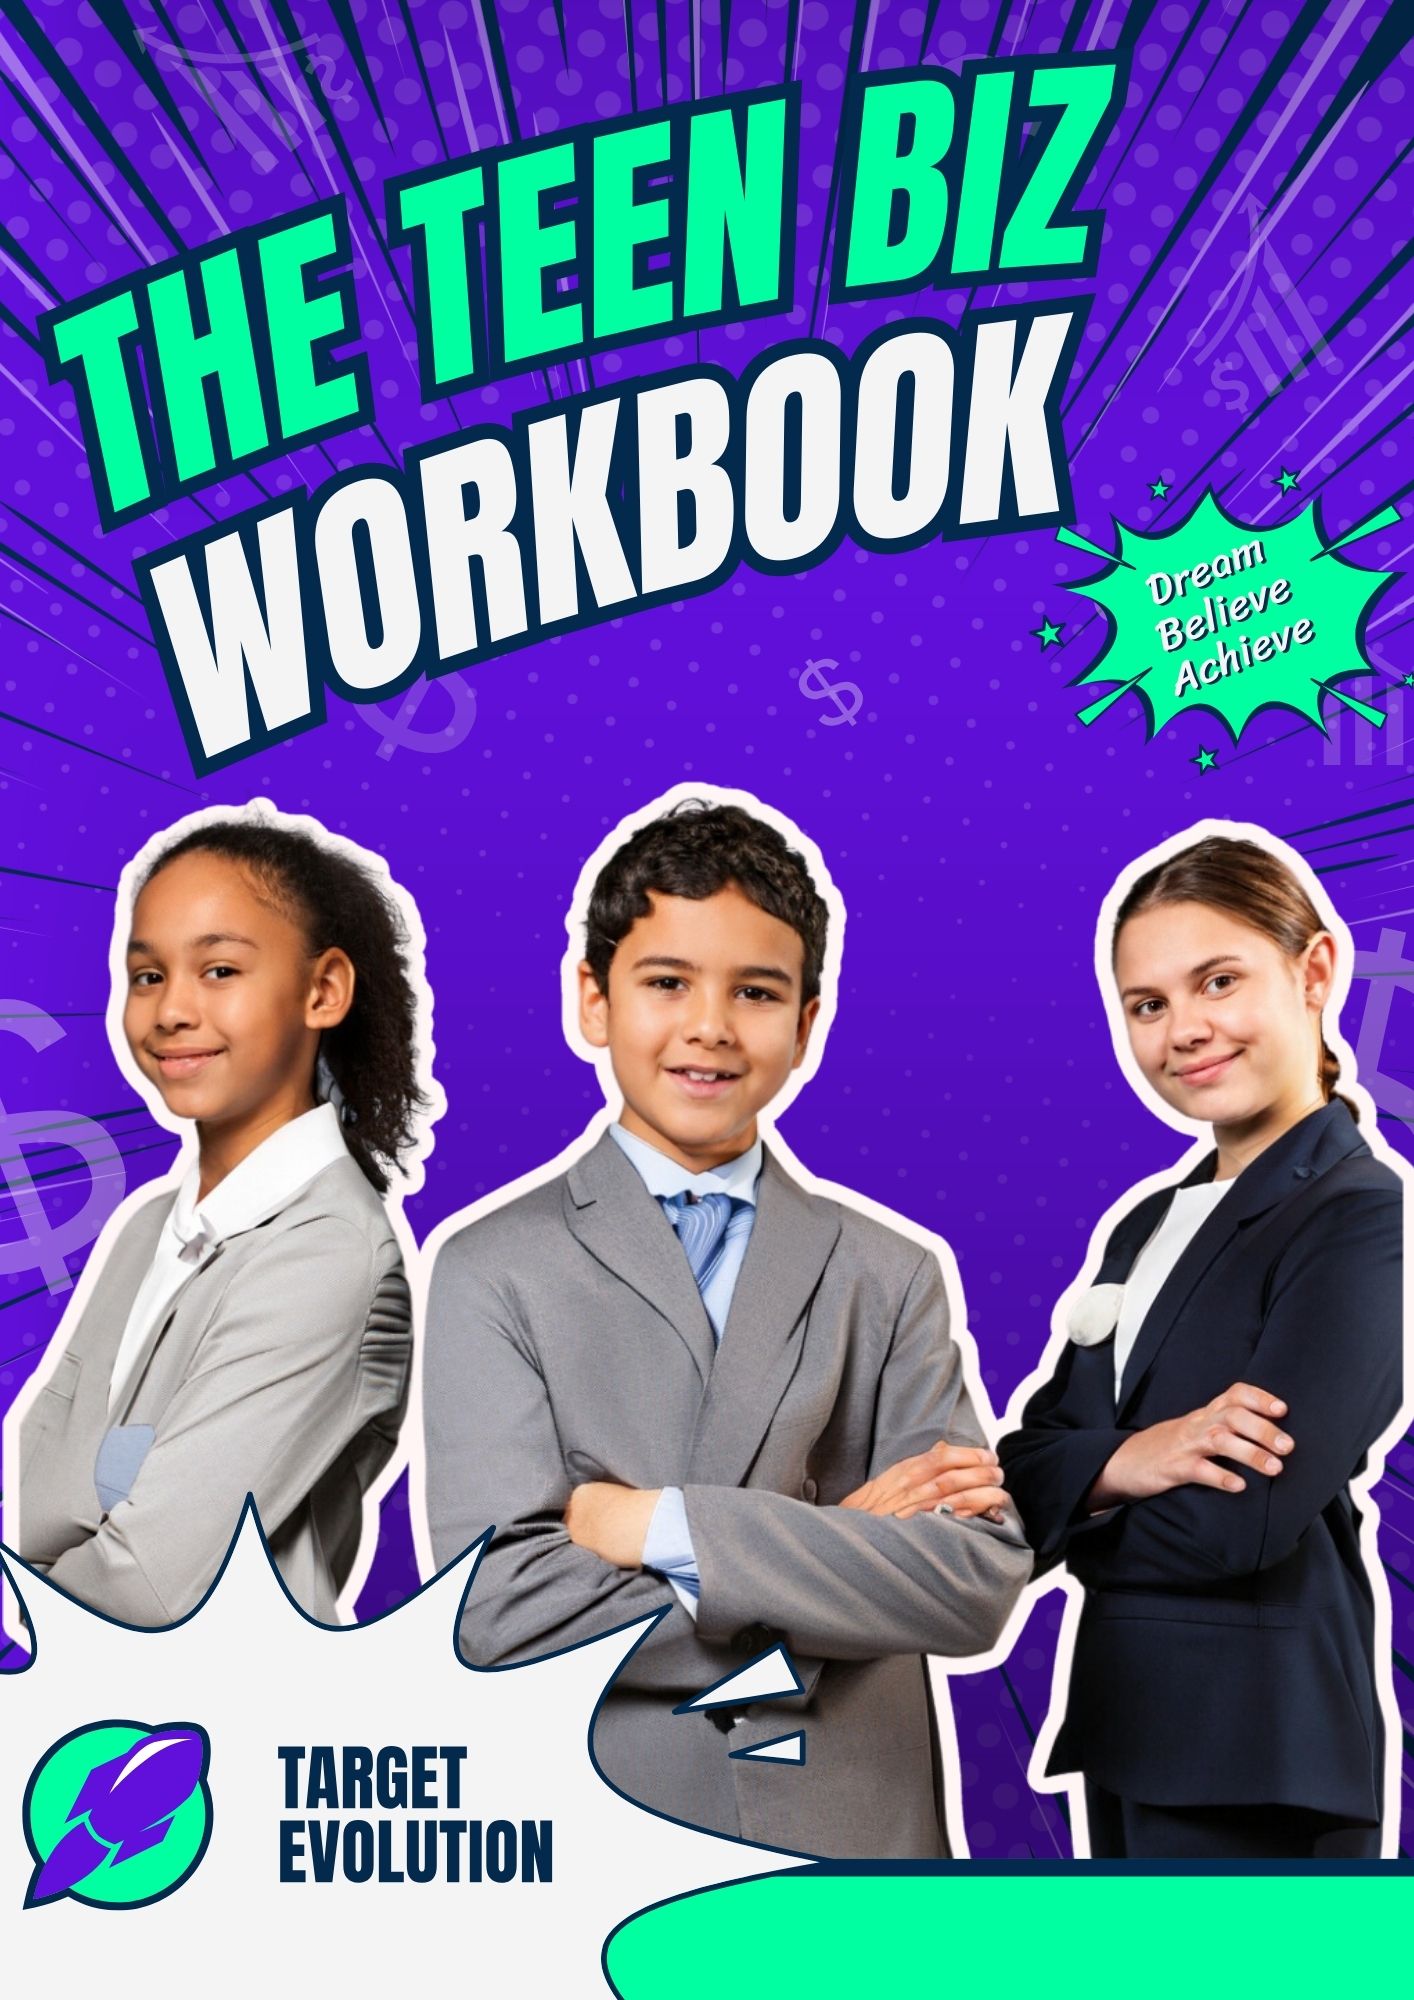 teen-biz-workbook-cover-final-.jpg